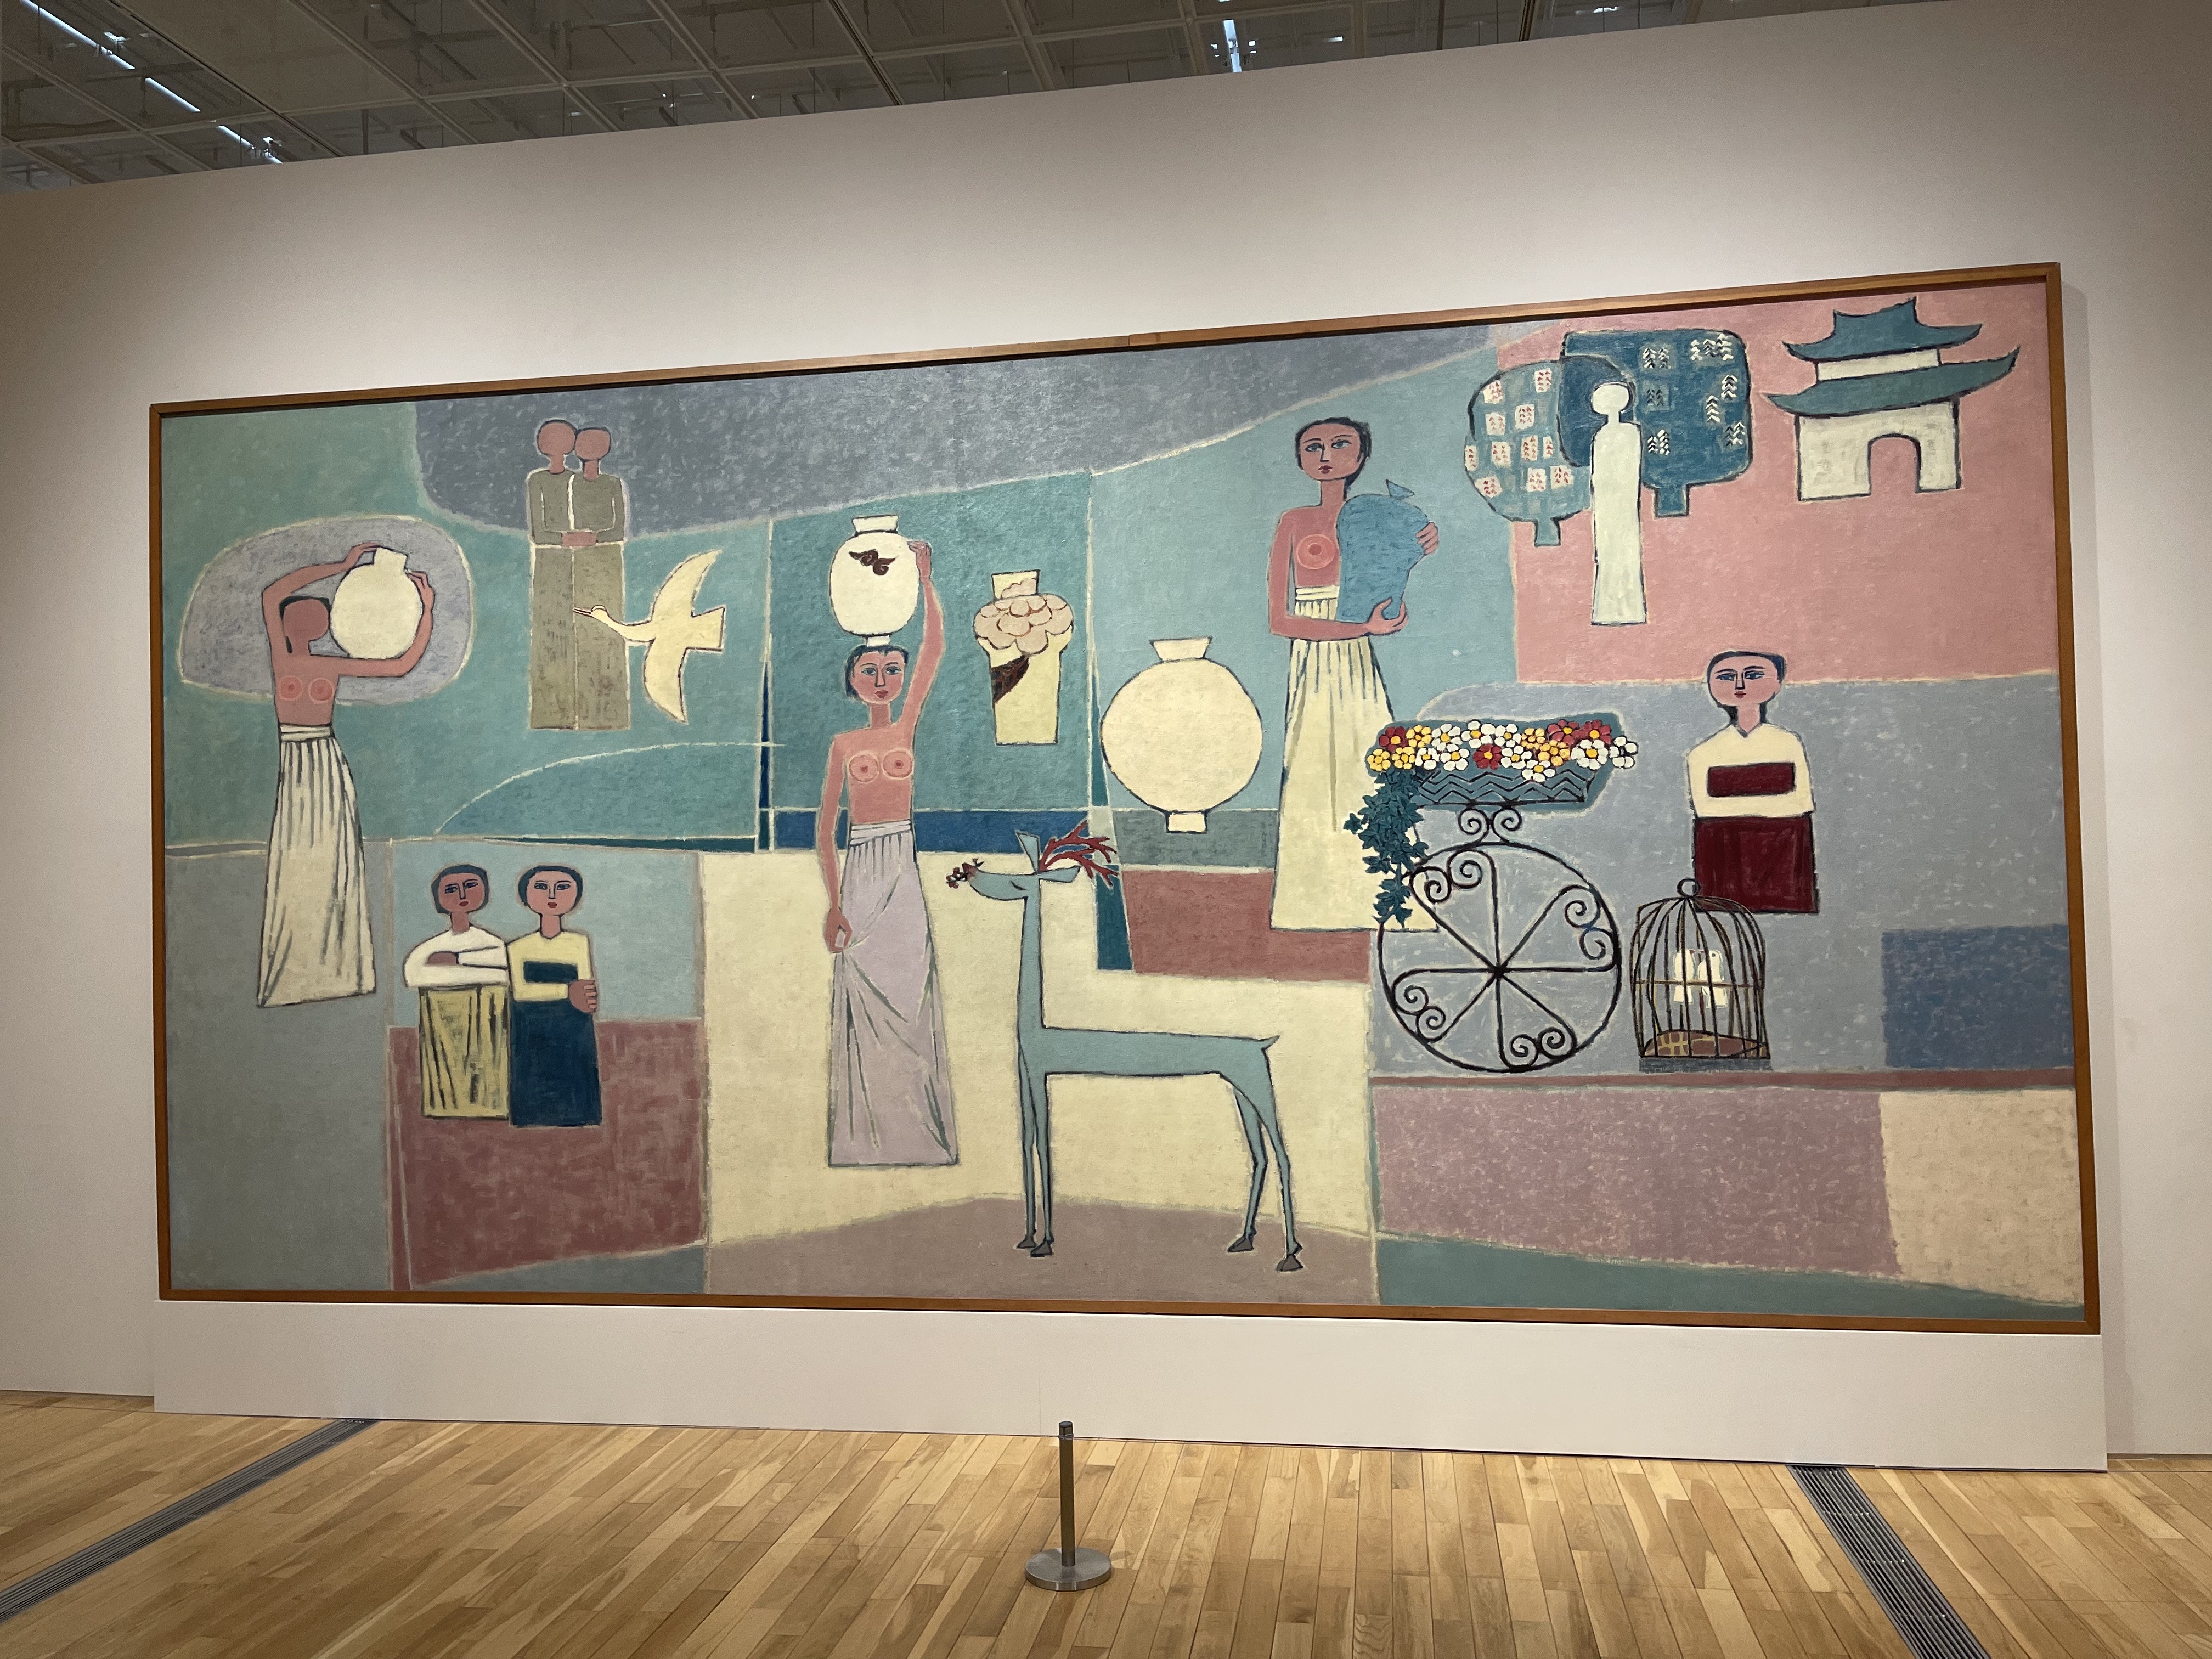 김환기(1913-1974), 여인들과 항아리, 1950년대, 캔버스에 유채, 281.5x567cm. ⓒ (재)환기재단·환기미술관 Whanki Foundation·Whanki Museum